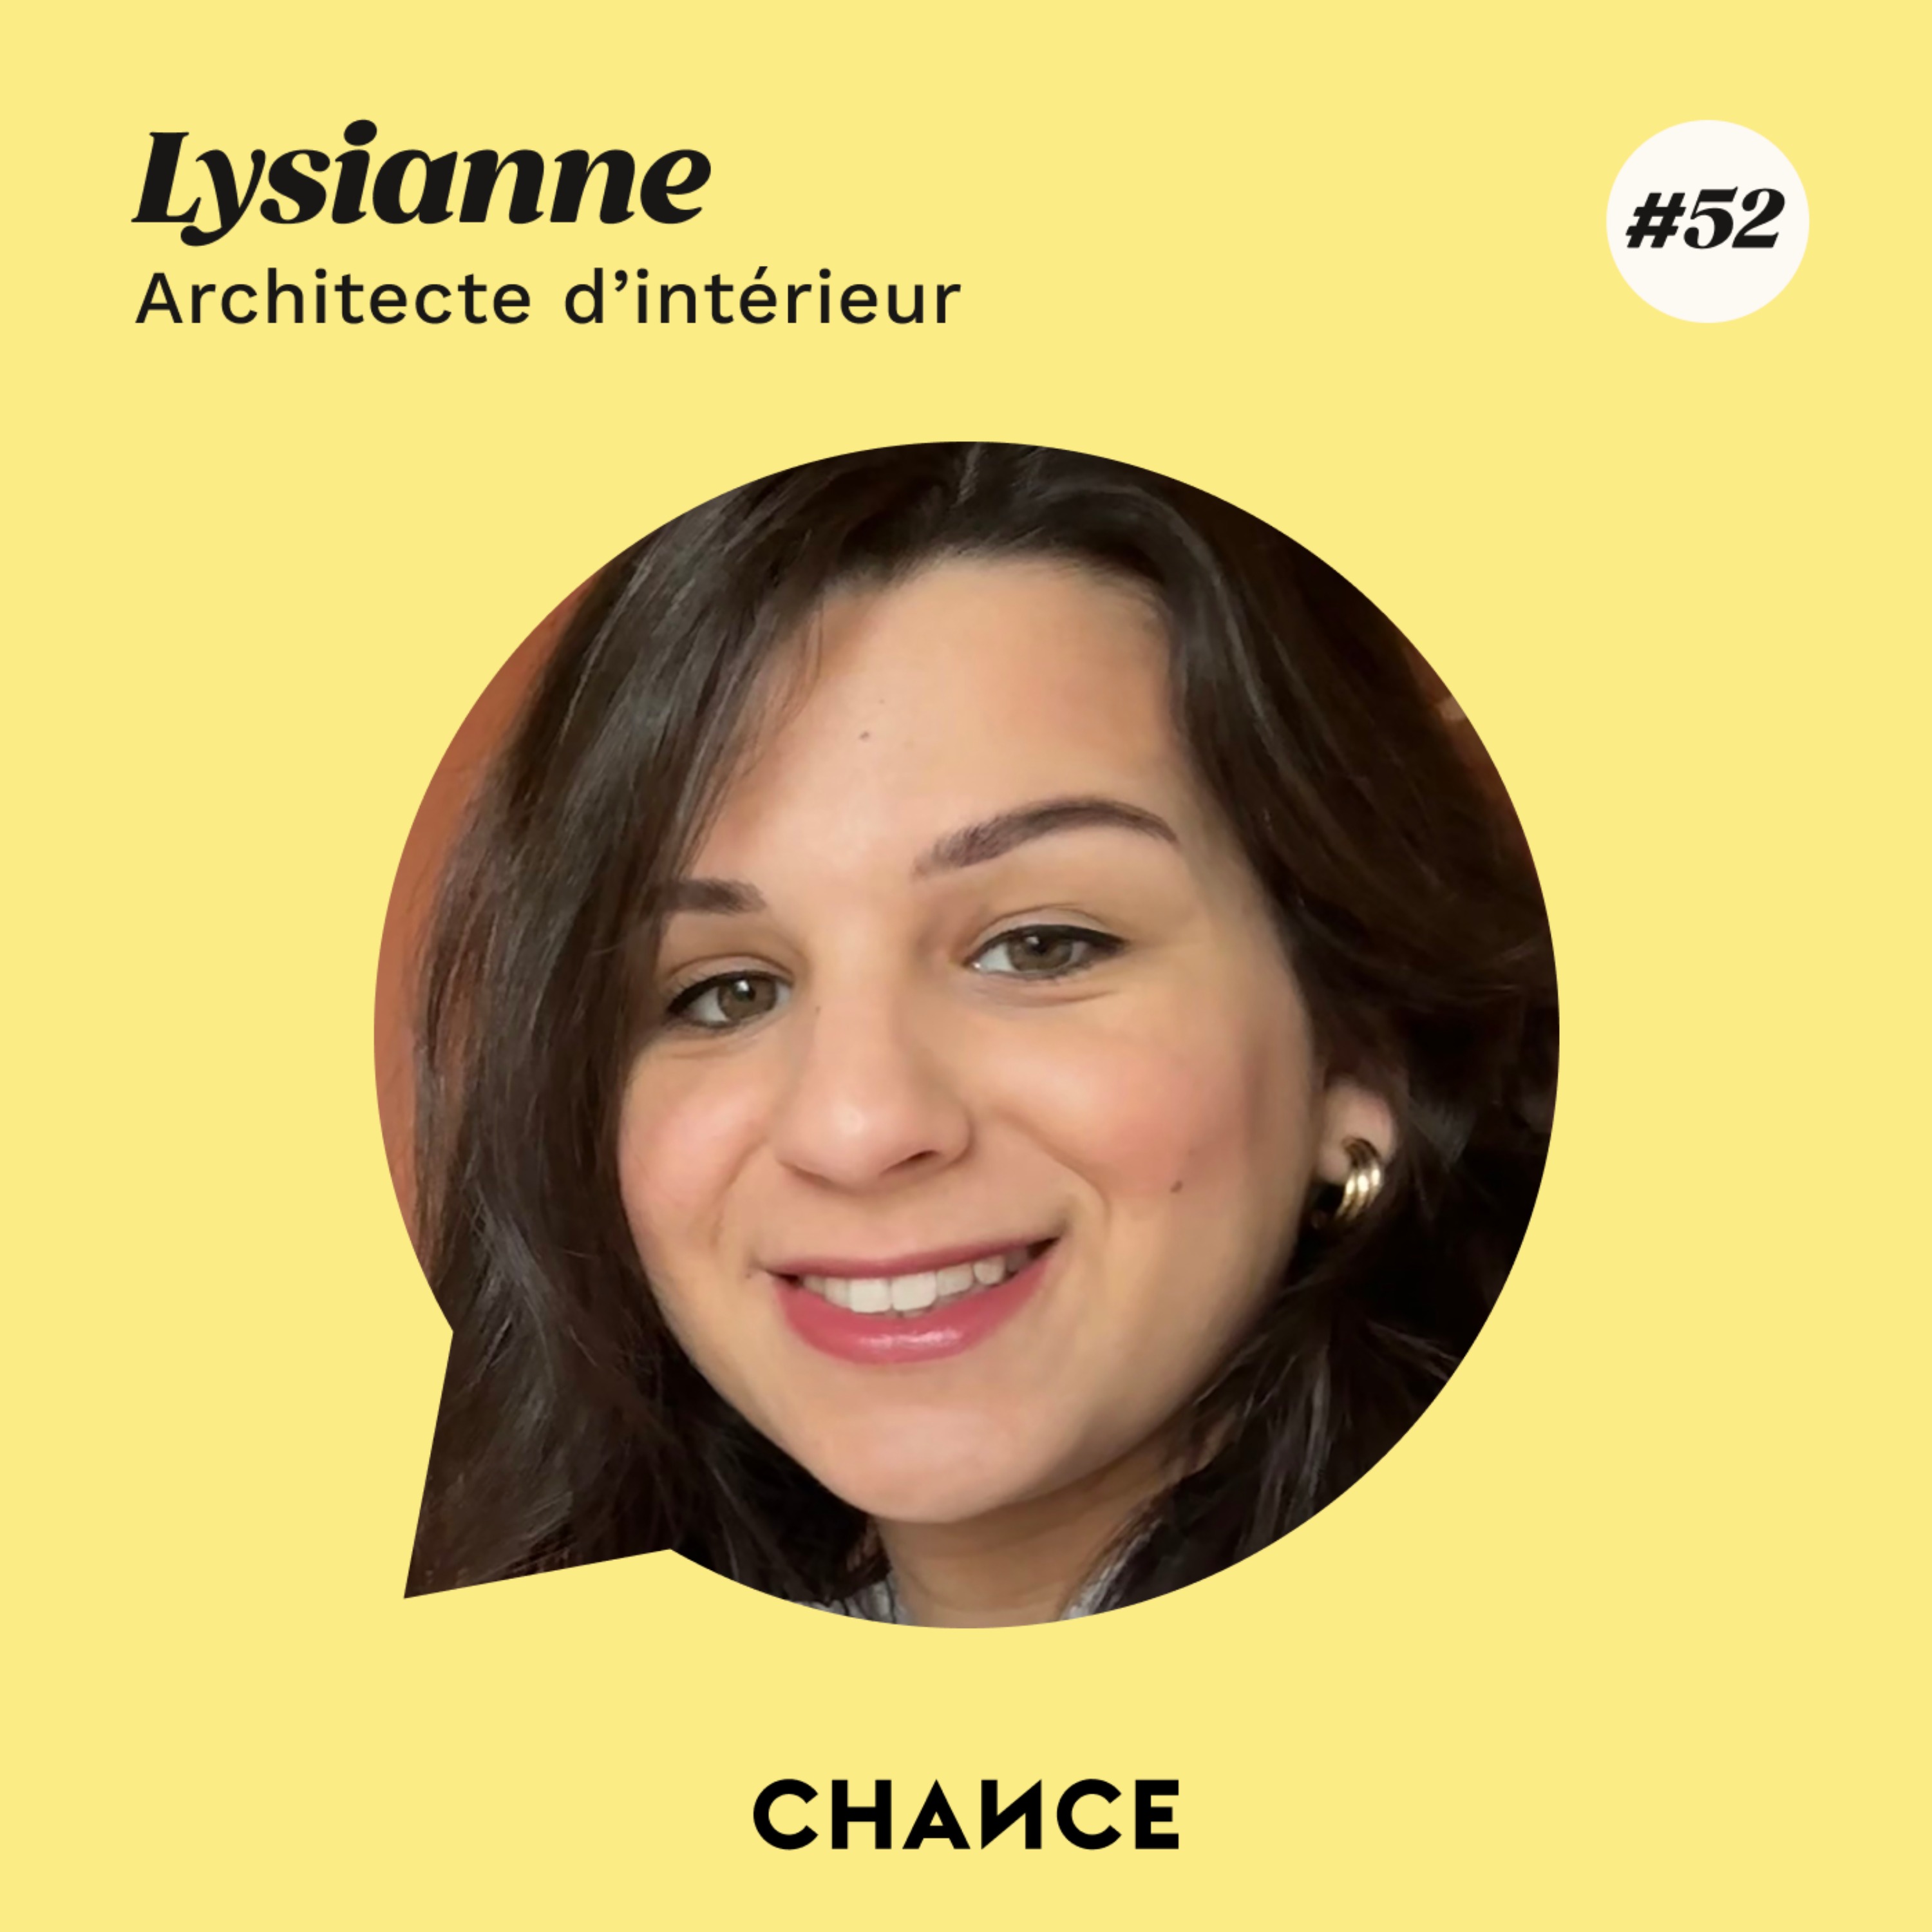 #52 - Lysianne, architecte d’intérieur : ”J’ai lié mon engagement pour une cause à mon métier”.